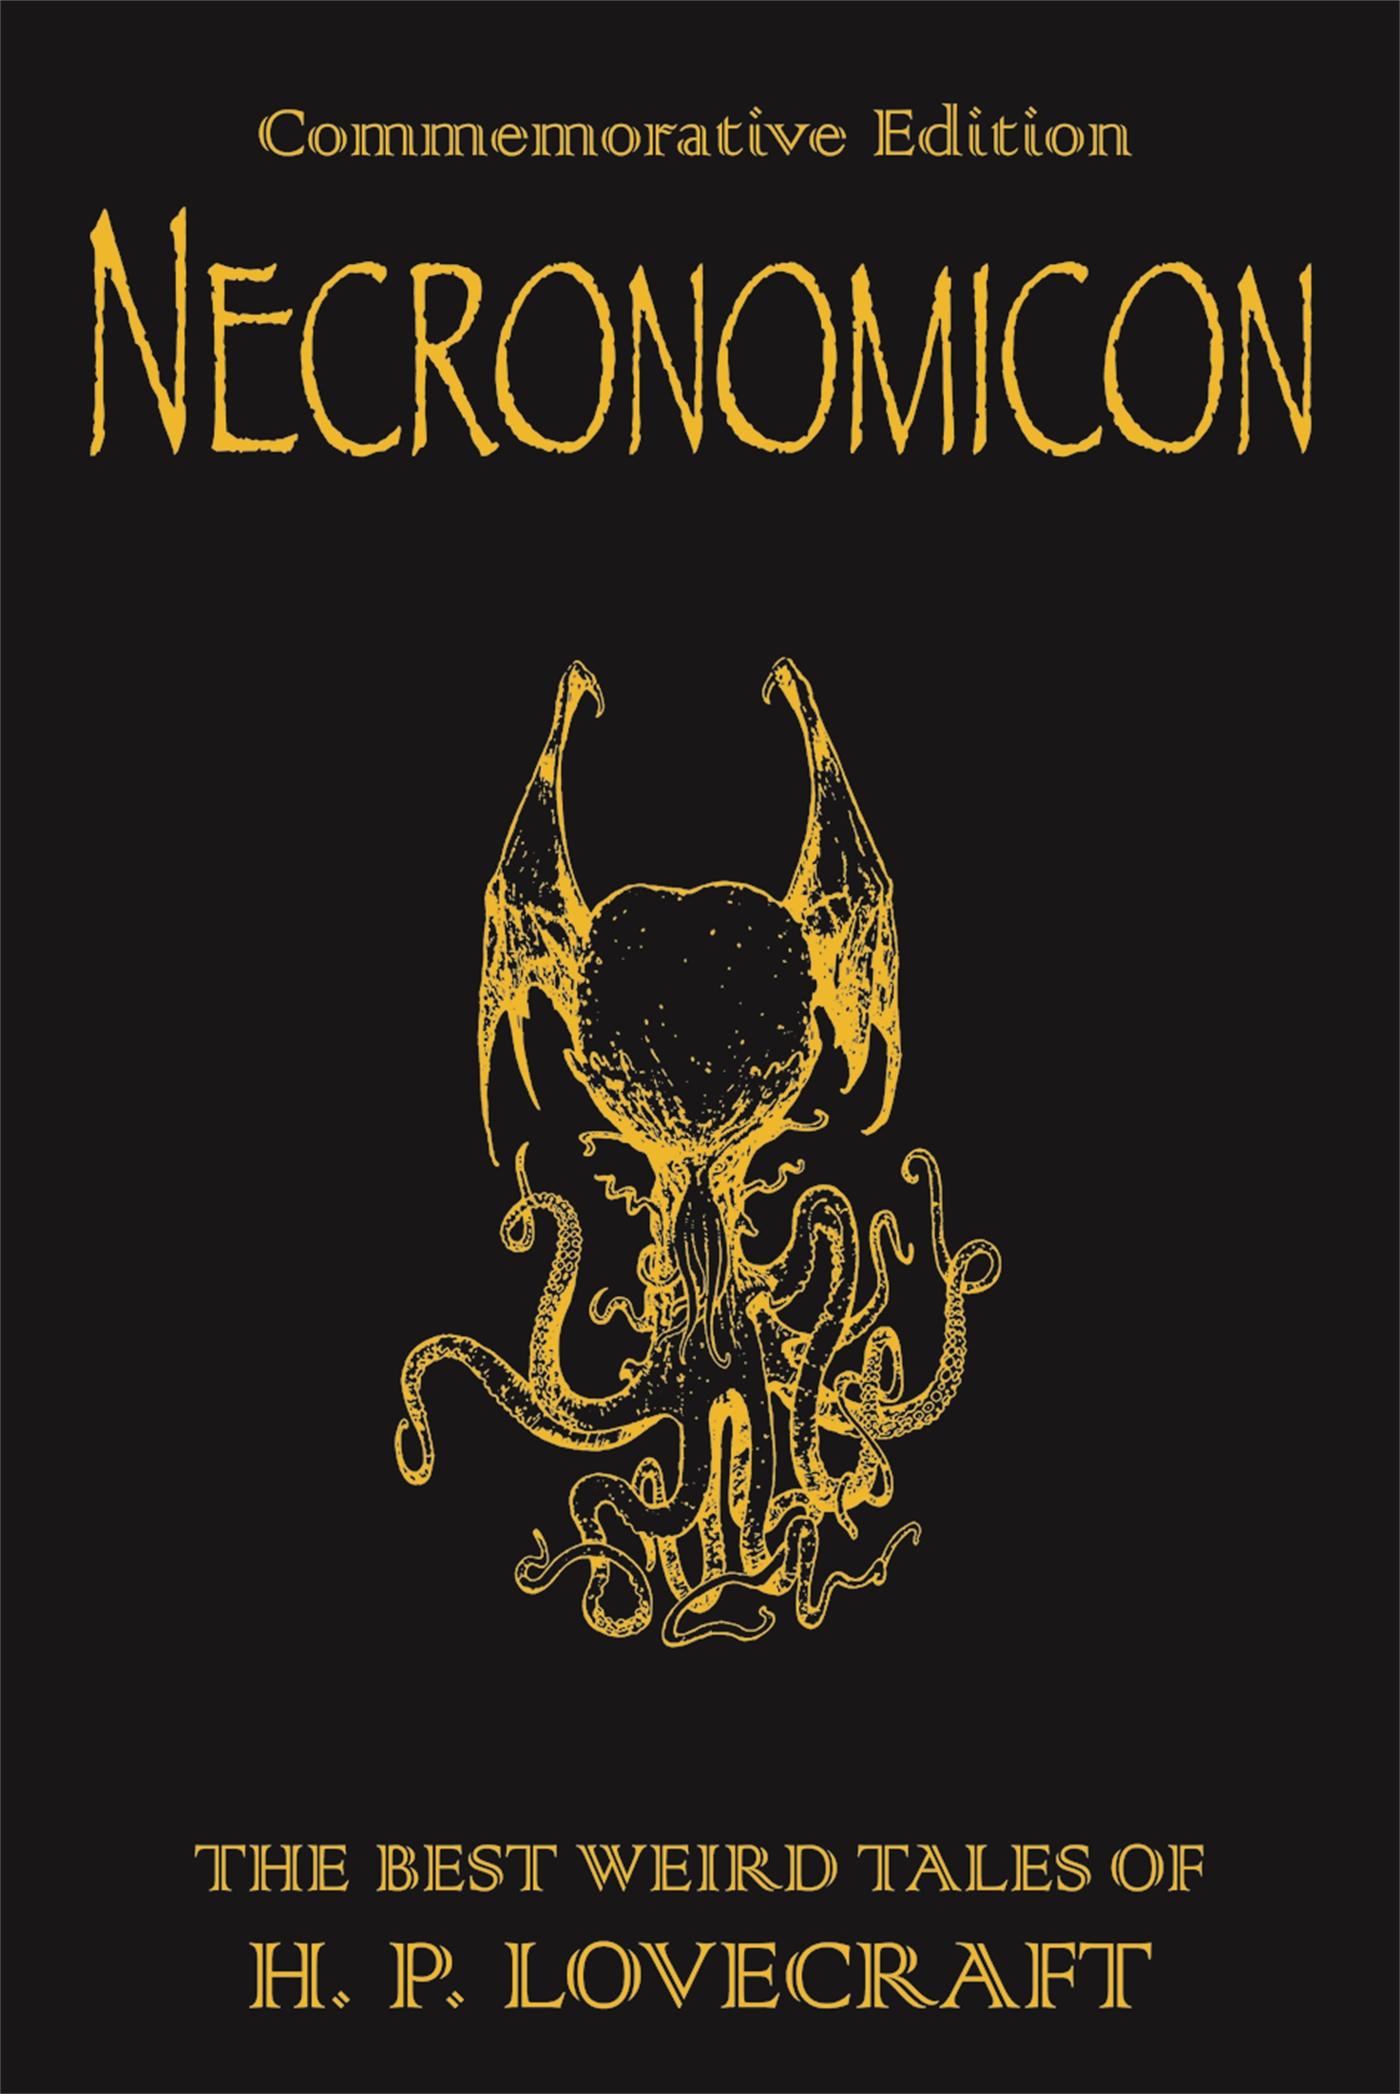 Necronomicon / The Best Weird Tales of H.P. Lovecraft / H. P. Lovecraft / Buch / Gebunden / Englisch / 2008 / Orion Publishing Co / EAN 9780575081567 - Lovecraft, H. P.